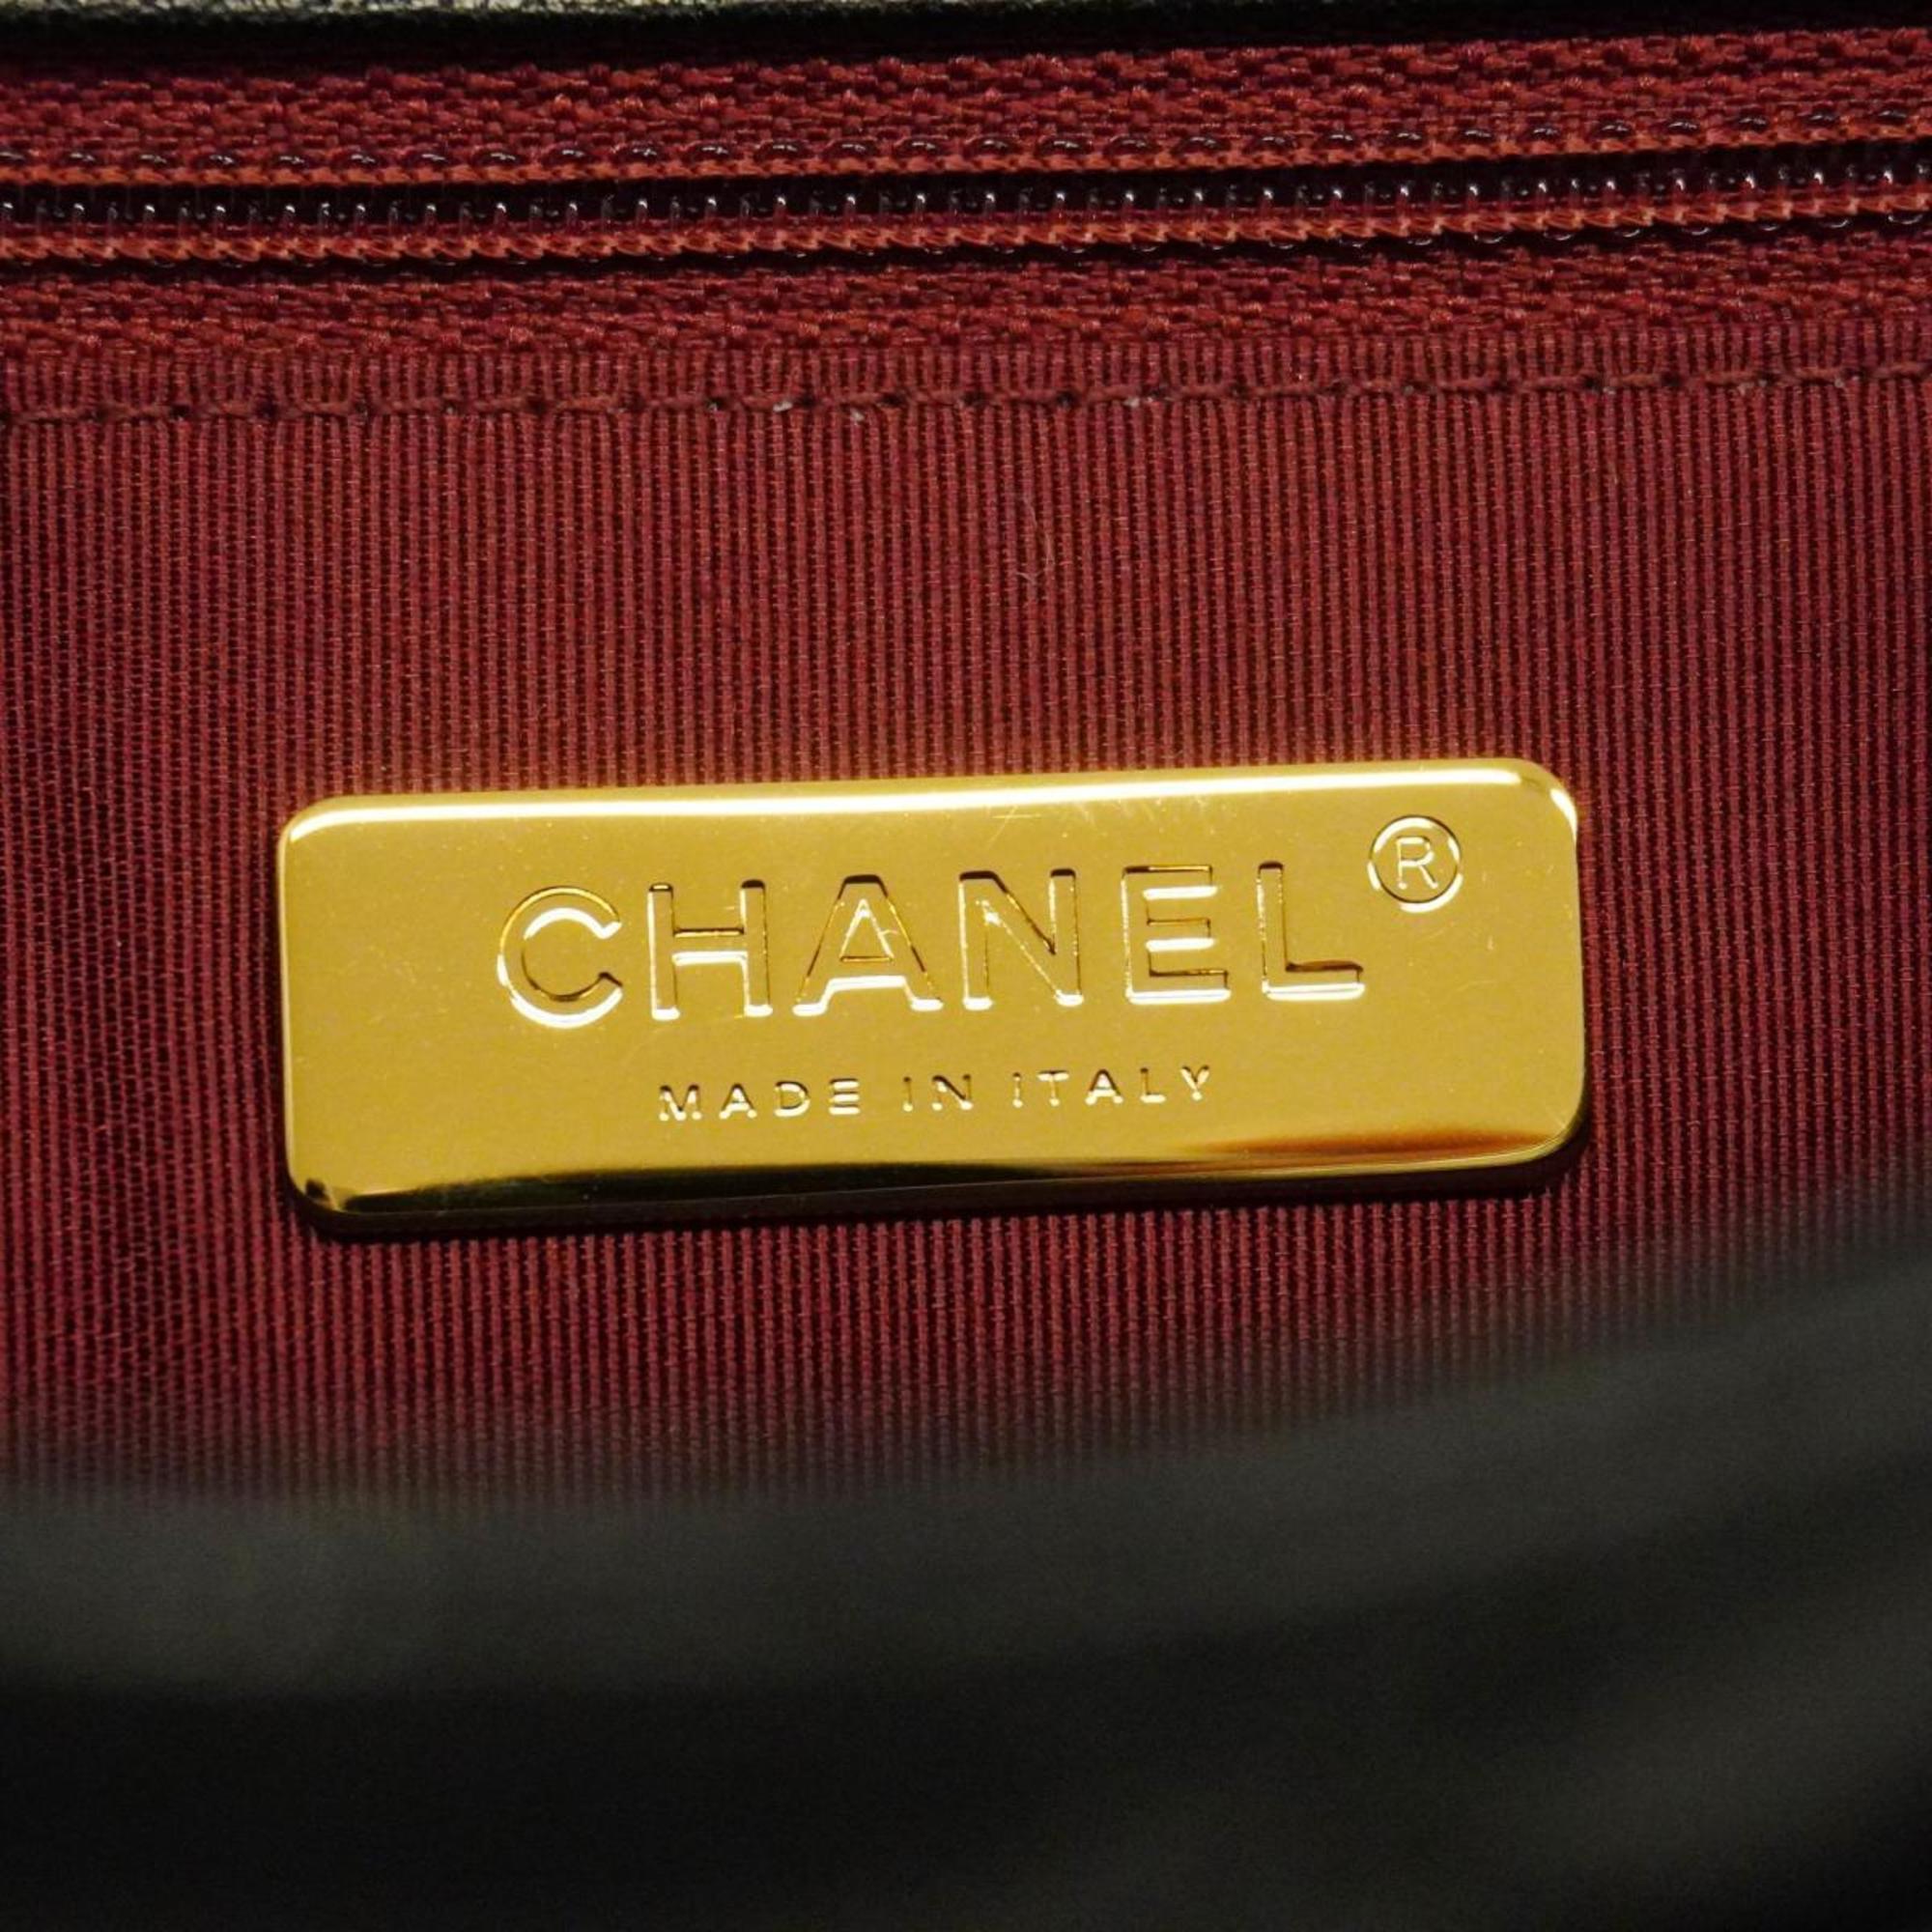 シャネル(Chanel) シャネル ハンドバッグ マトラッセ チェーンショルダー ラムスキン ブラック   レディース